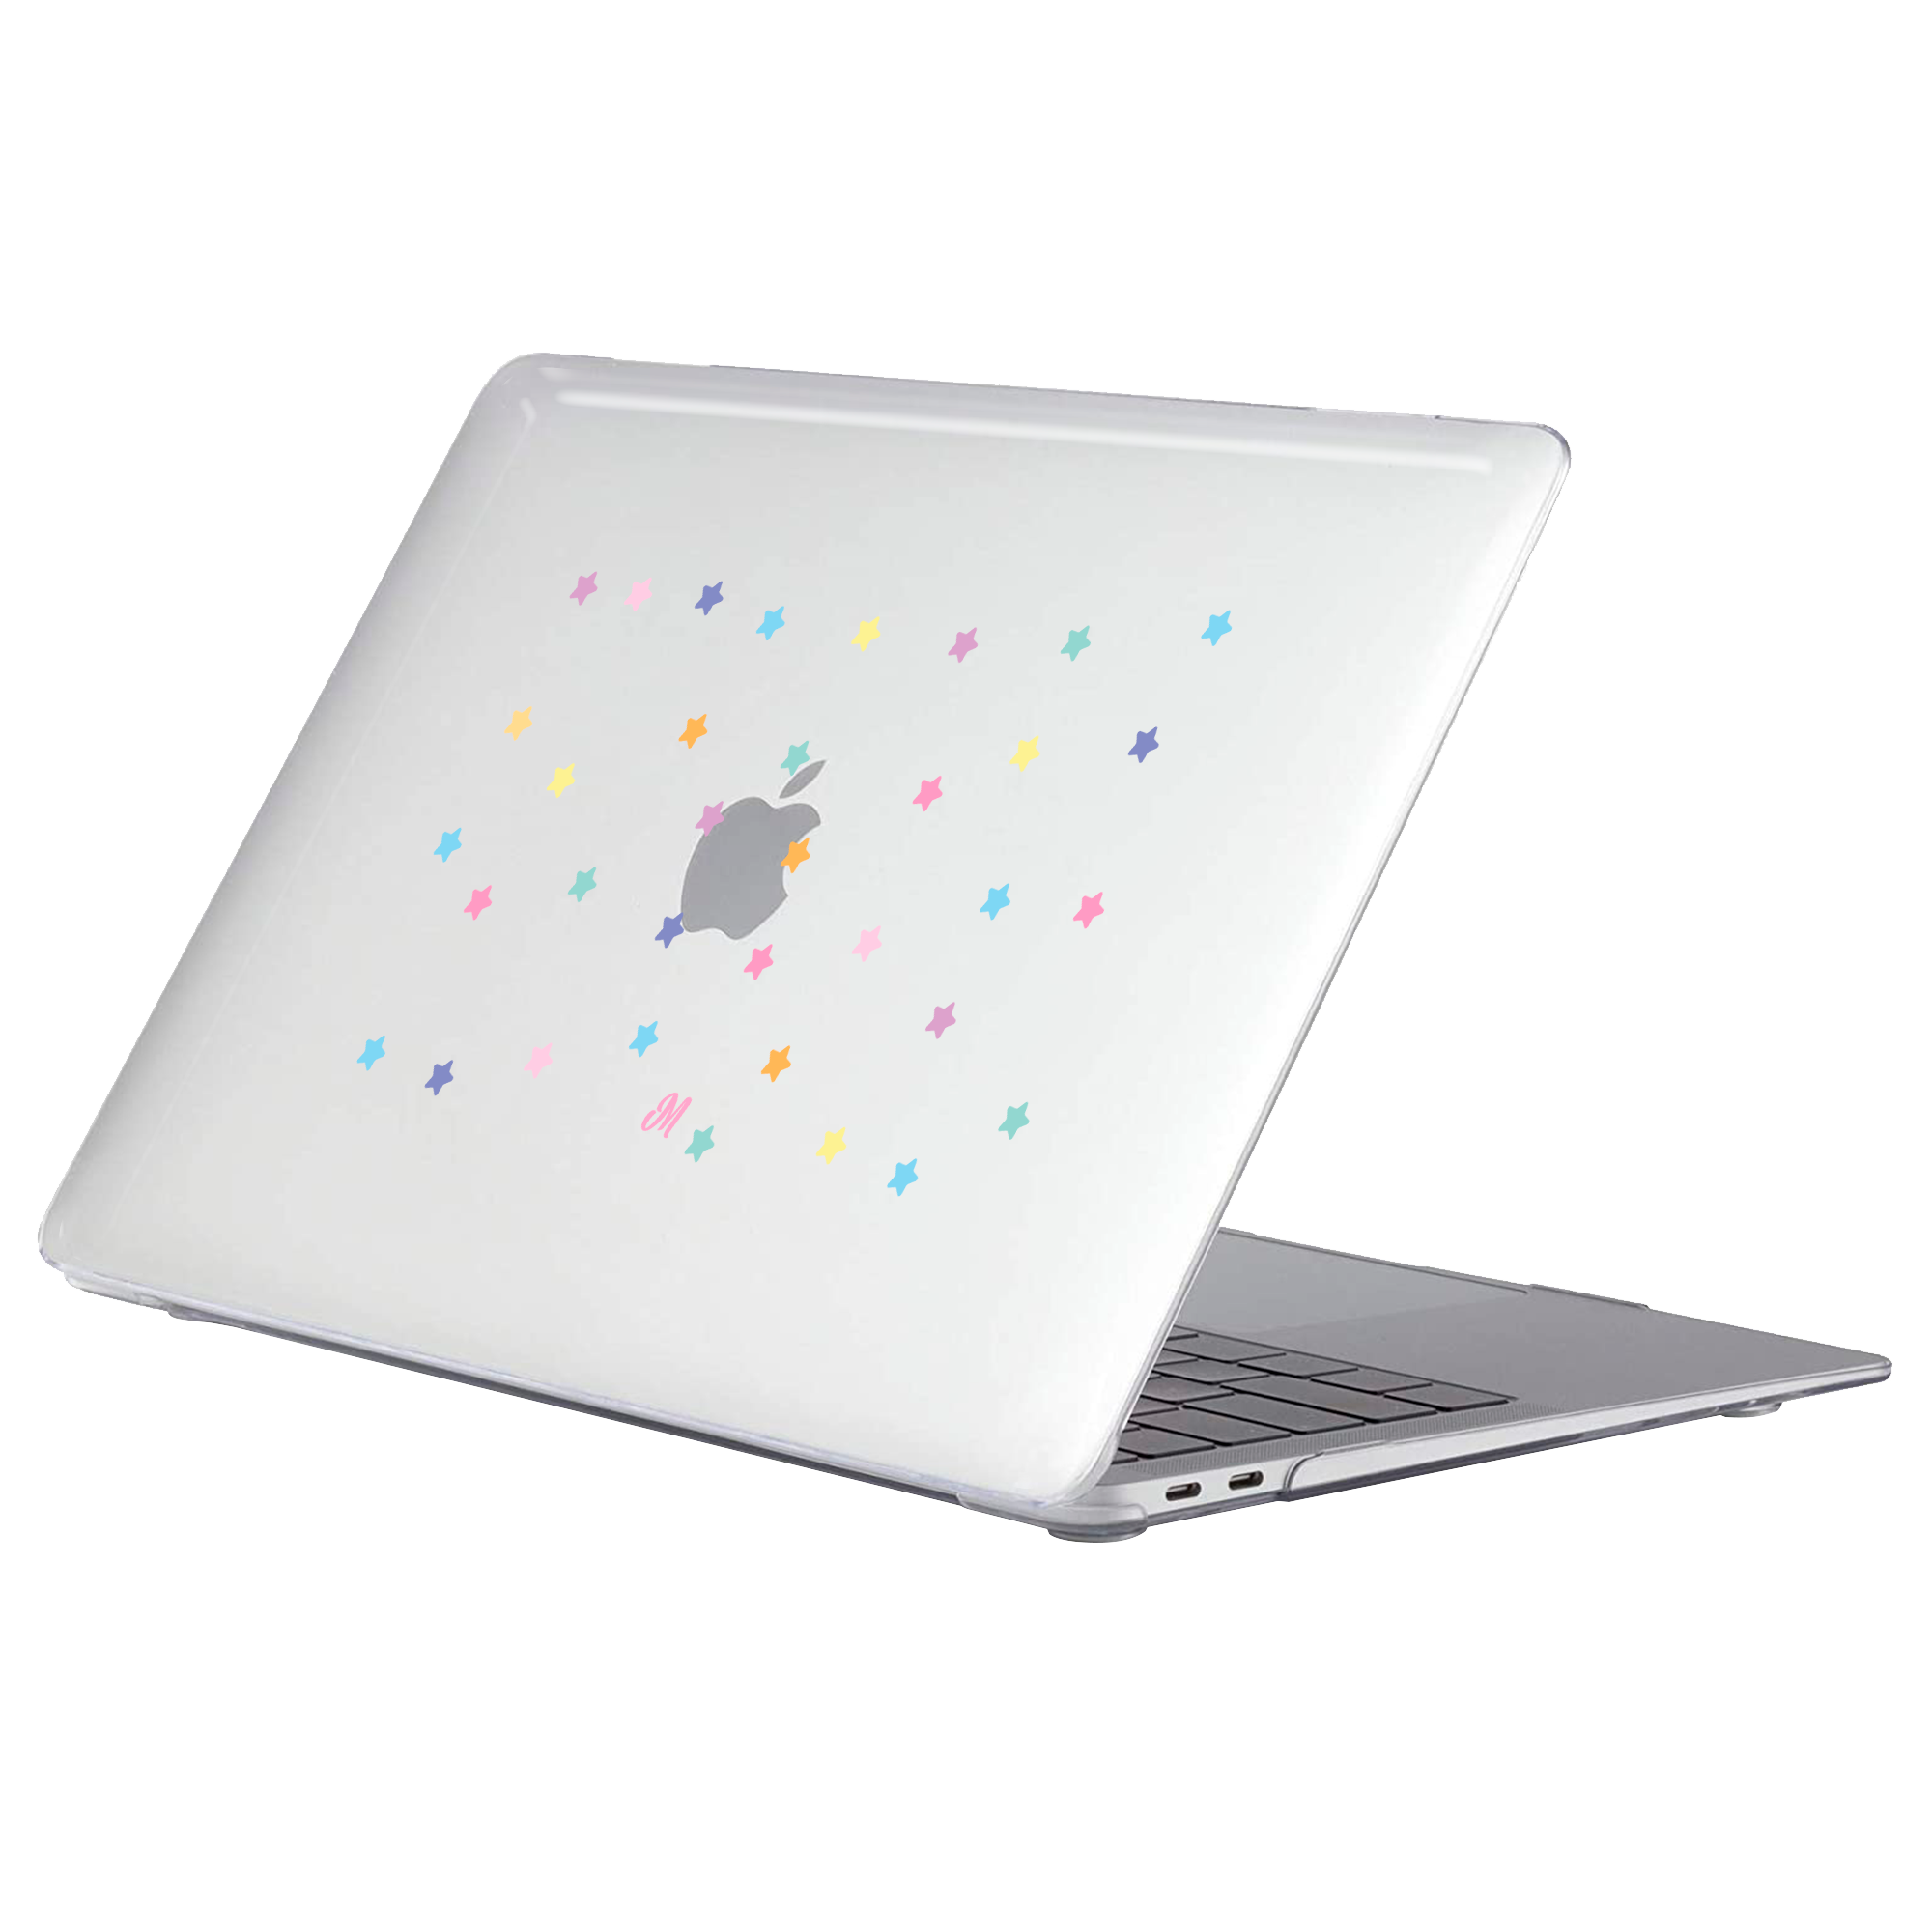 Fiesta de Estrellas MacBook Case - Mandala Cases